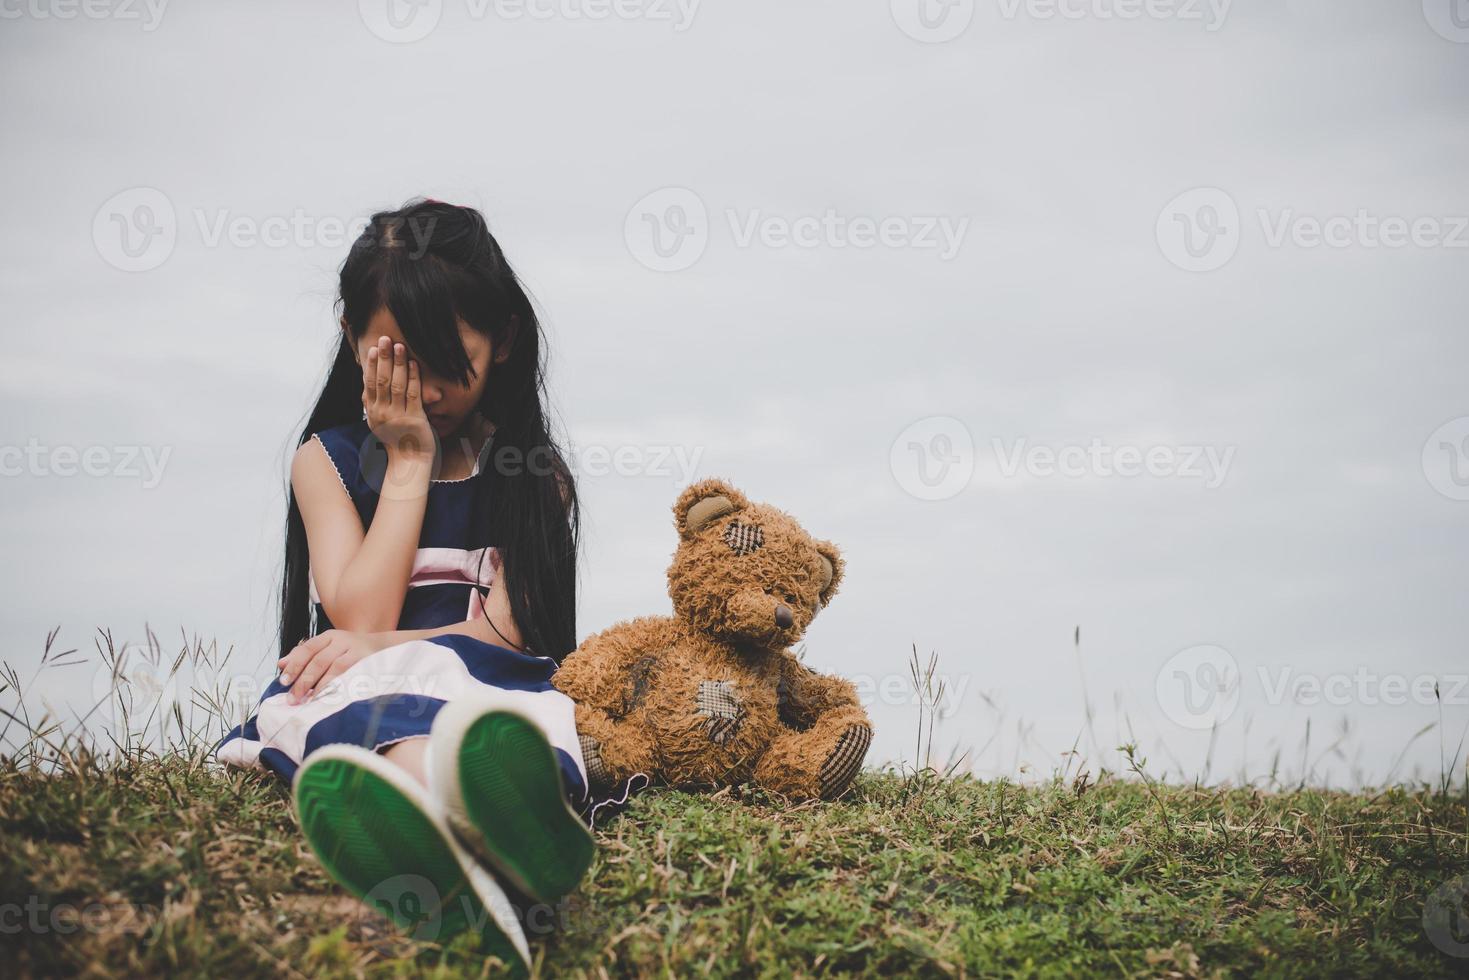 kleines Mädchen sitzt mit ihrem Bären verärgert foto